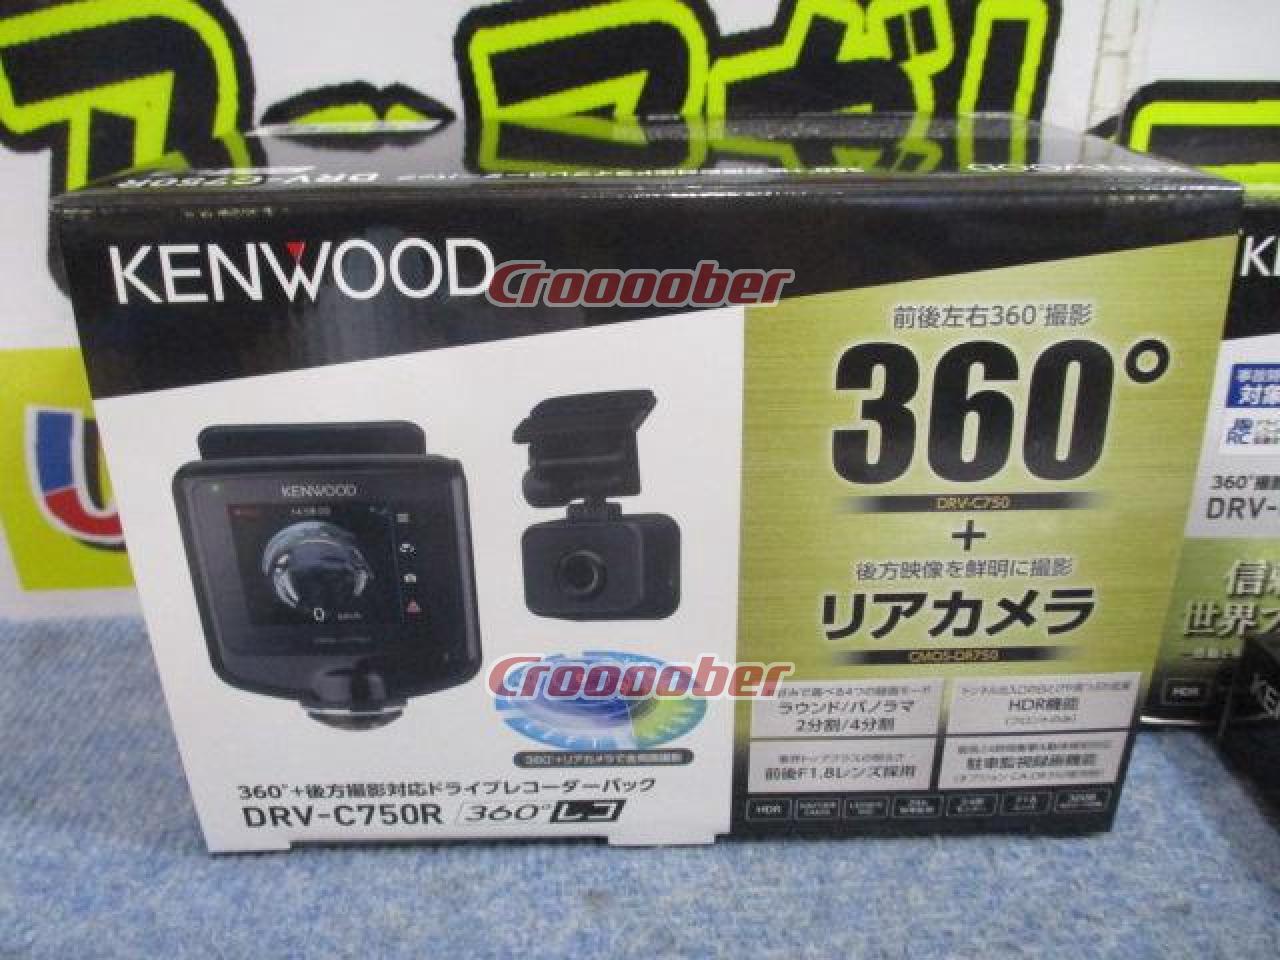 KENWOOD(ケンウッド) DRV-C750R 360°+ 後方撮影対応ドライブレコーダーパック | カーAVアクセサリー  ドライブレコーダーパーツの通販なら | Croooober(クルーバー)